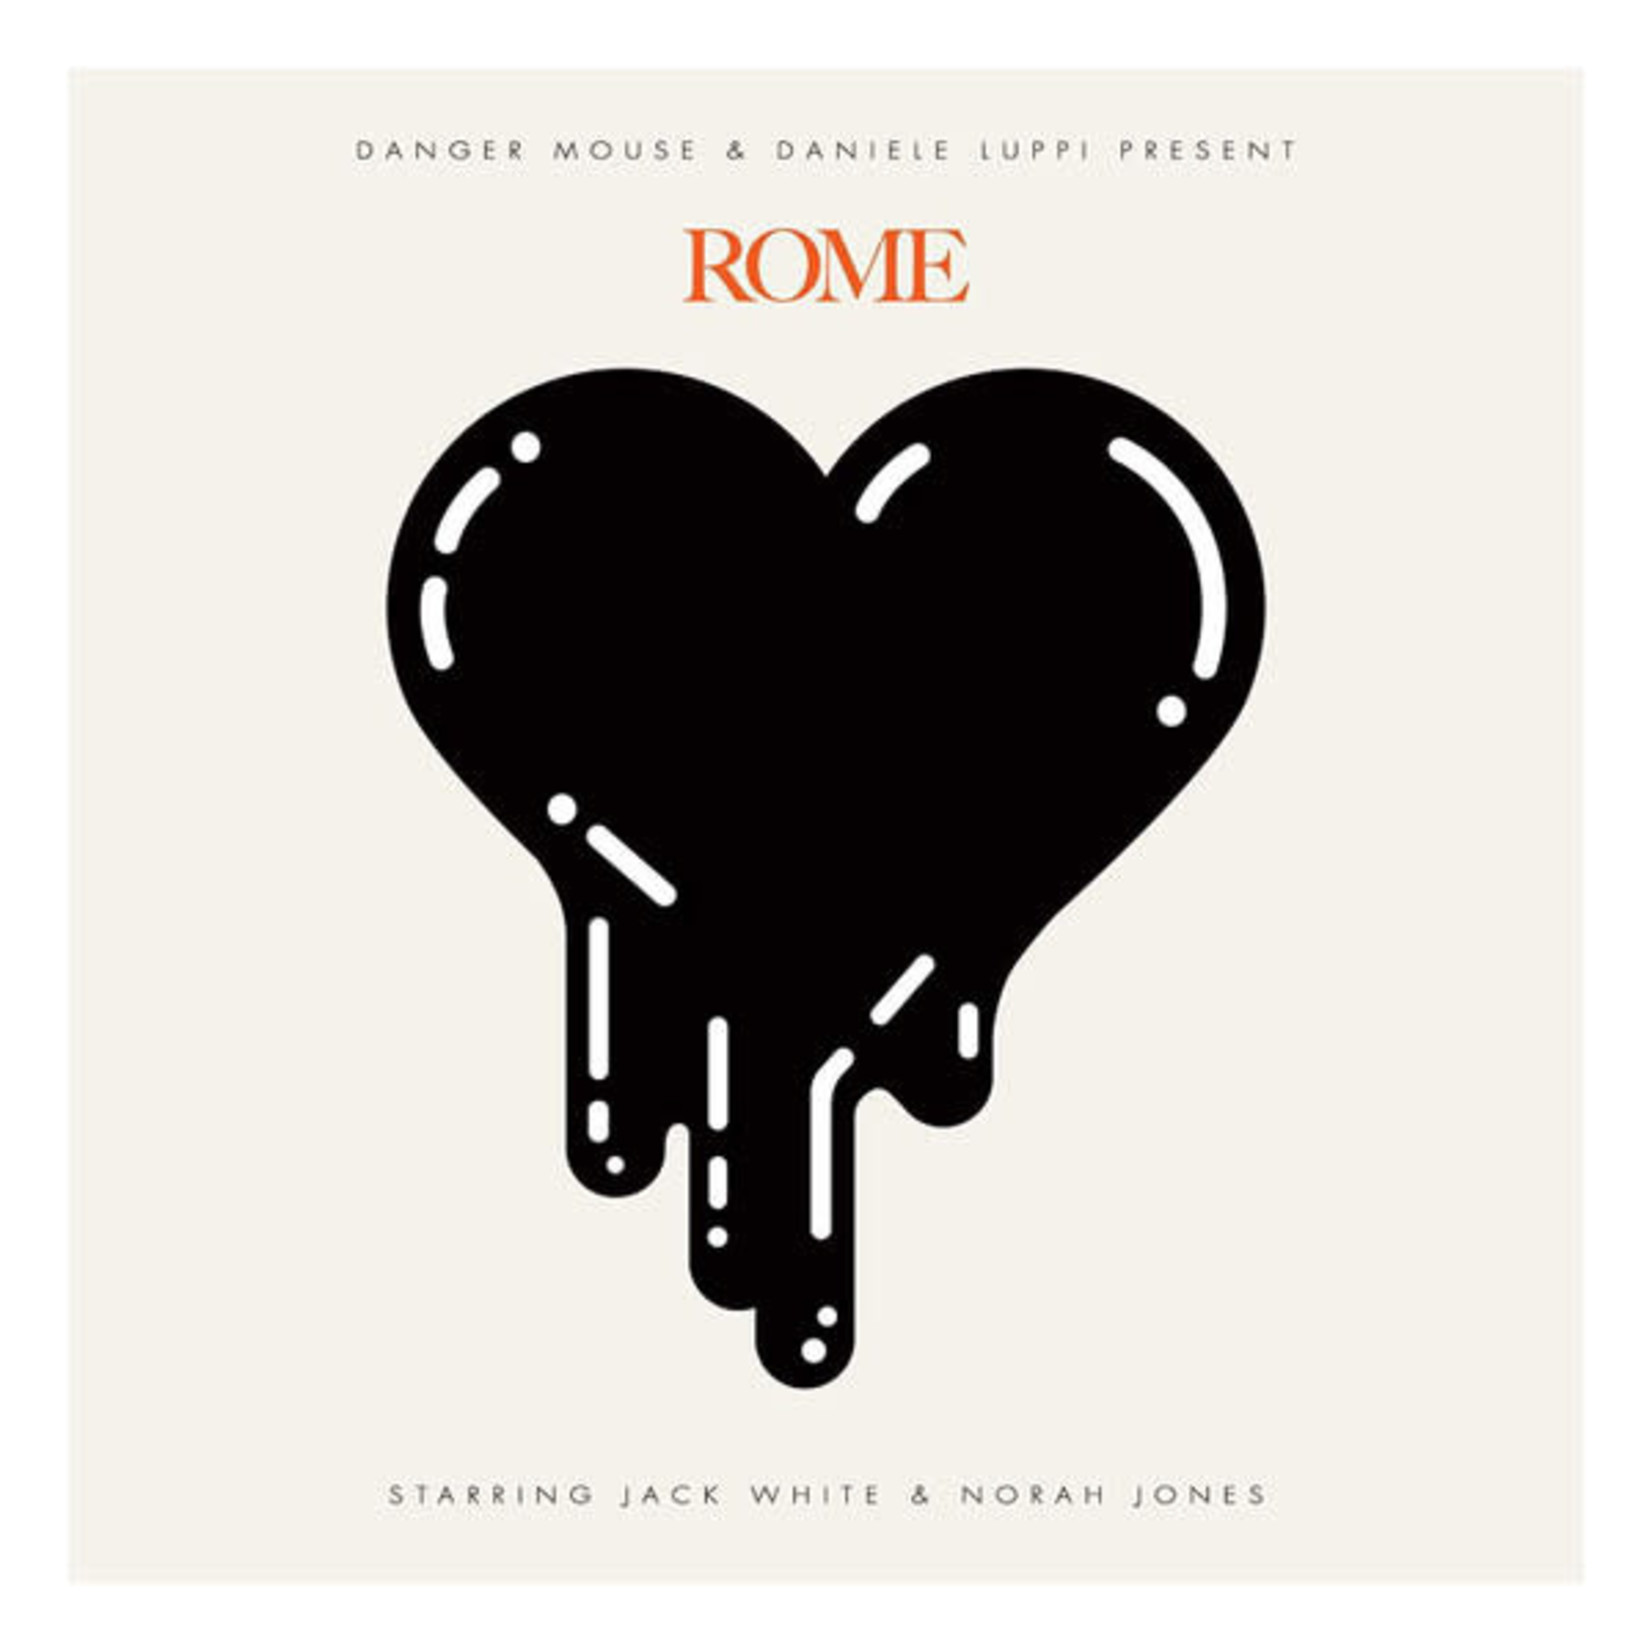 [New] Danger Mouse & Daniele Luppi present ROME - Rome (starring Jack White & Norah Jones)